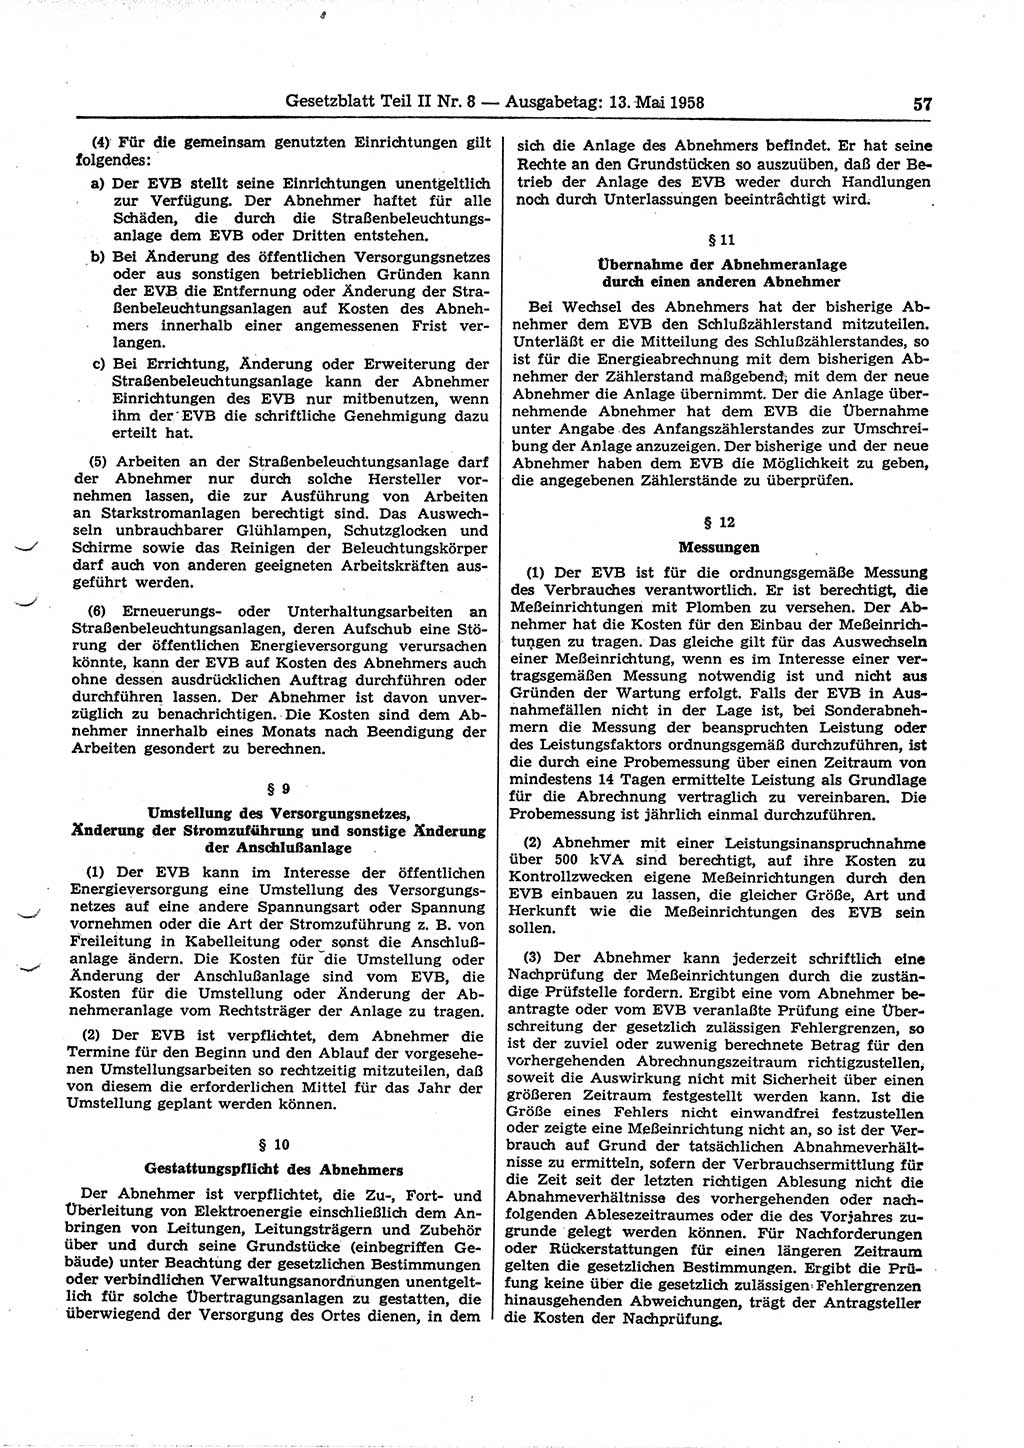 Gesetzblatt (GBl.) der Deutschen Demokratischen Republik (DDR) Teil ⅠⅠ 1958, Seite 57 (GBl. DDR ⅠⅠ 1958, S. 57)